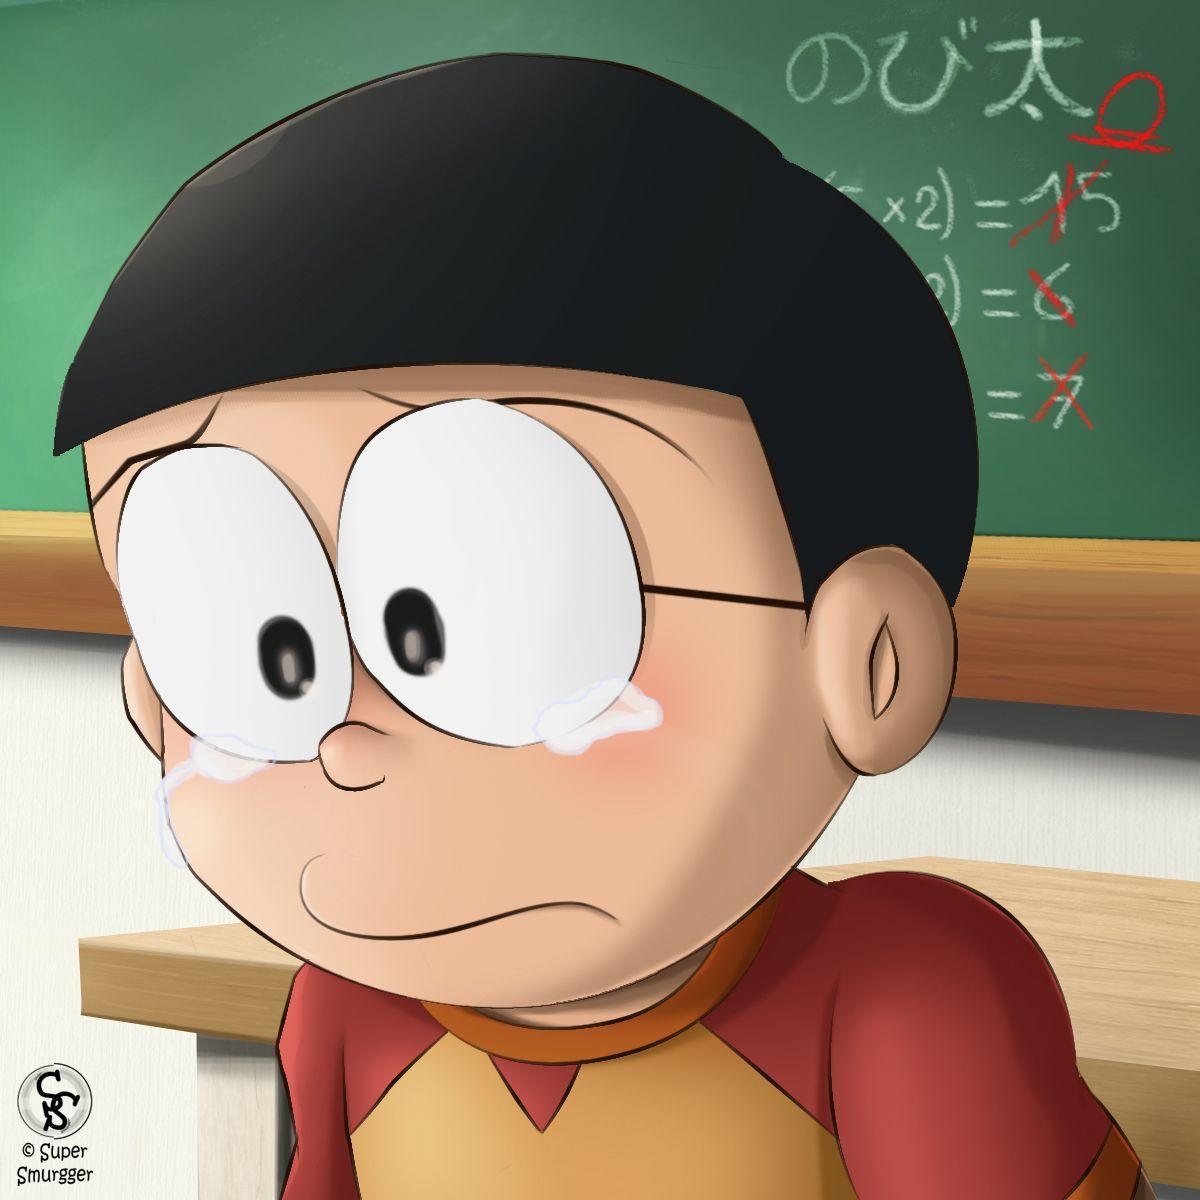 Sad Nobita Wallpapers - Top Free Sad Nobita Backgrounds - WallpaperAccess